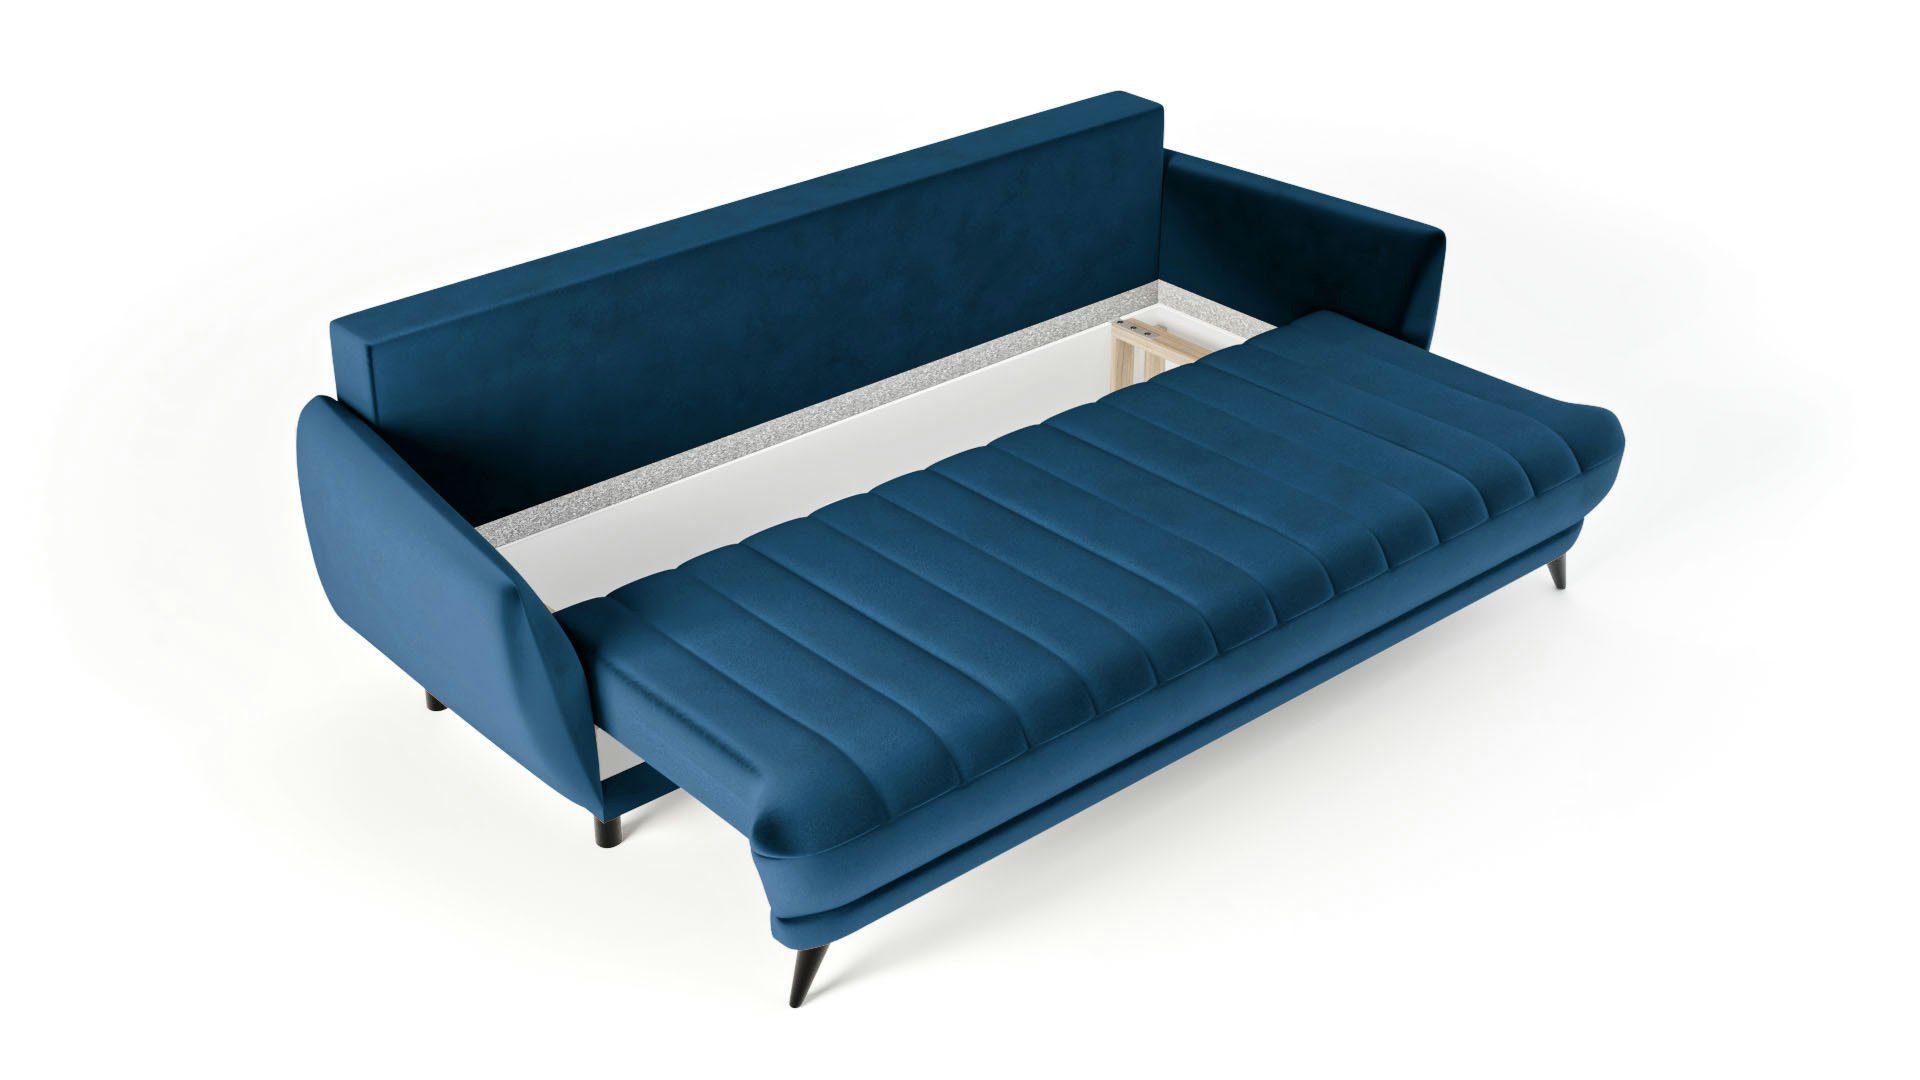 Siblo Rolo 3-Sitzer 3 Blau bequemes Wohnzimmer 3-Sitzer Elegantes Sofa modernes Dreisitziges Sofa Sofa - - -